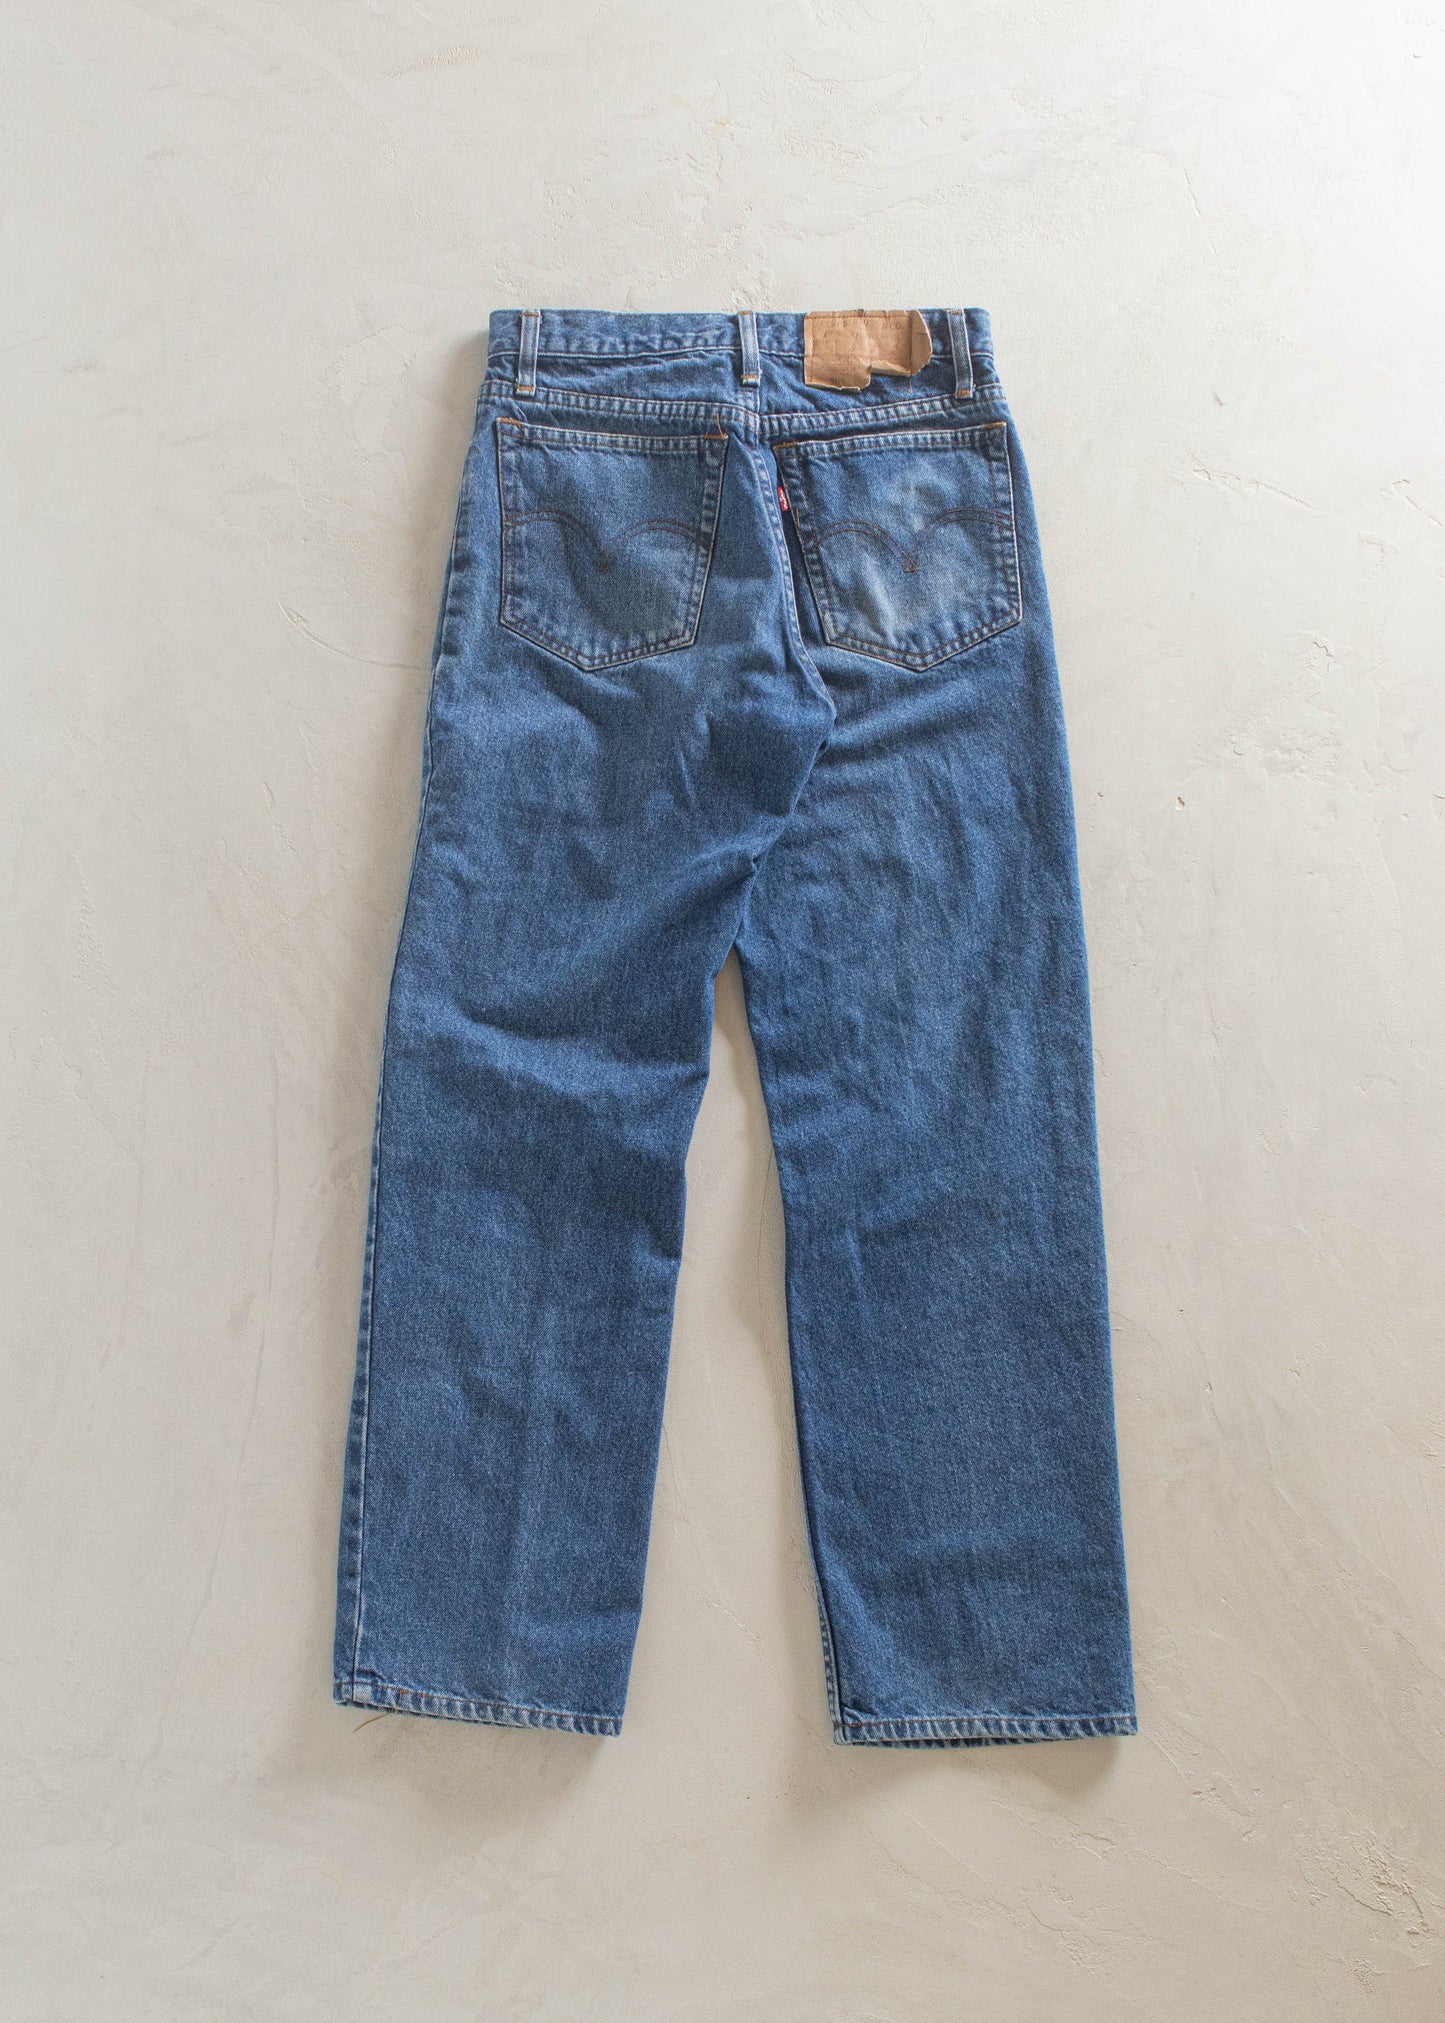 1980s Levi's 501 Midwash Jeans Size Women's 26 Men's 30